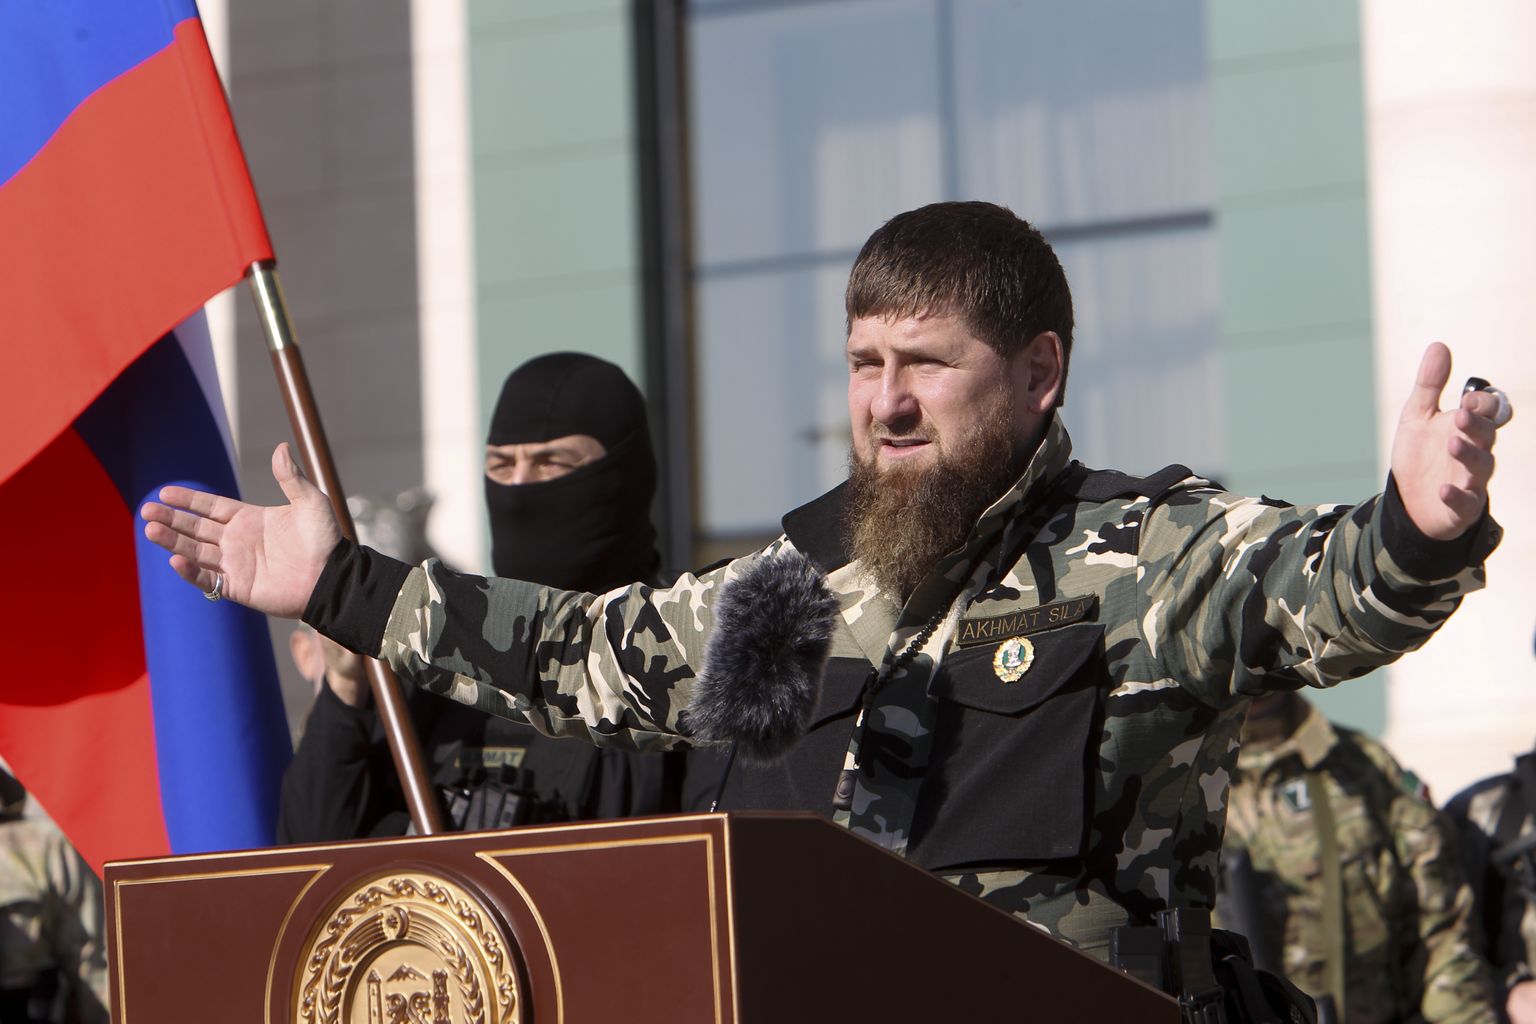 Venemaa Tšetšeeni Vabariigi liider Ramzan Kadõrov pidamas 29. märtsil 2022  Groznõis kõnet